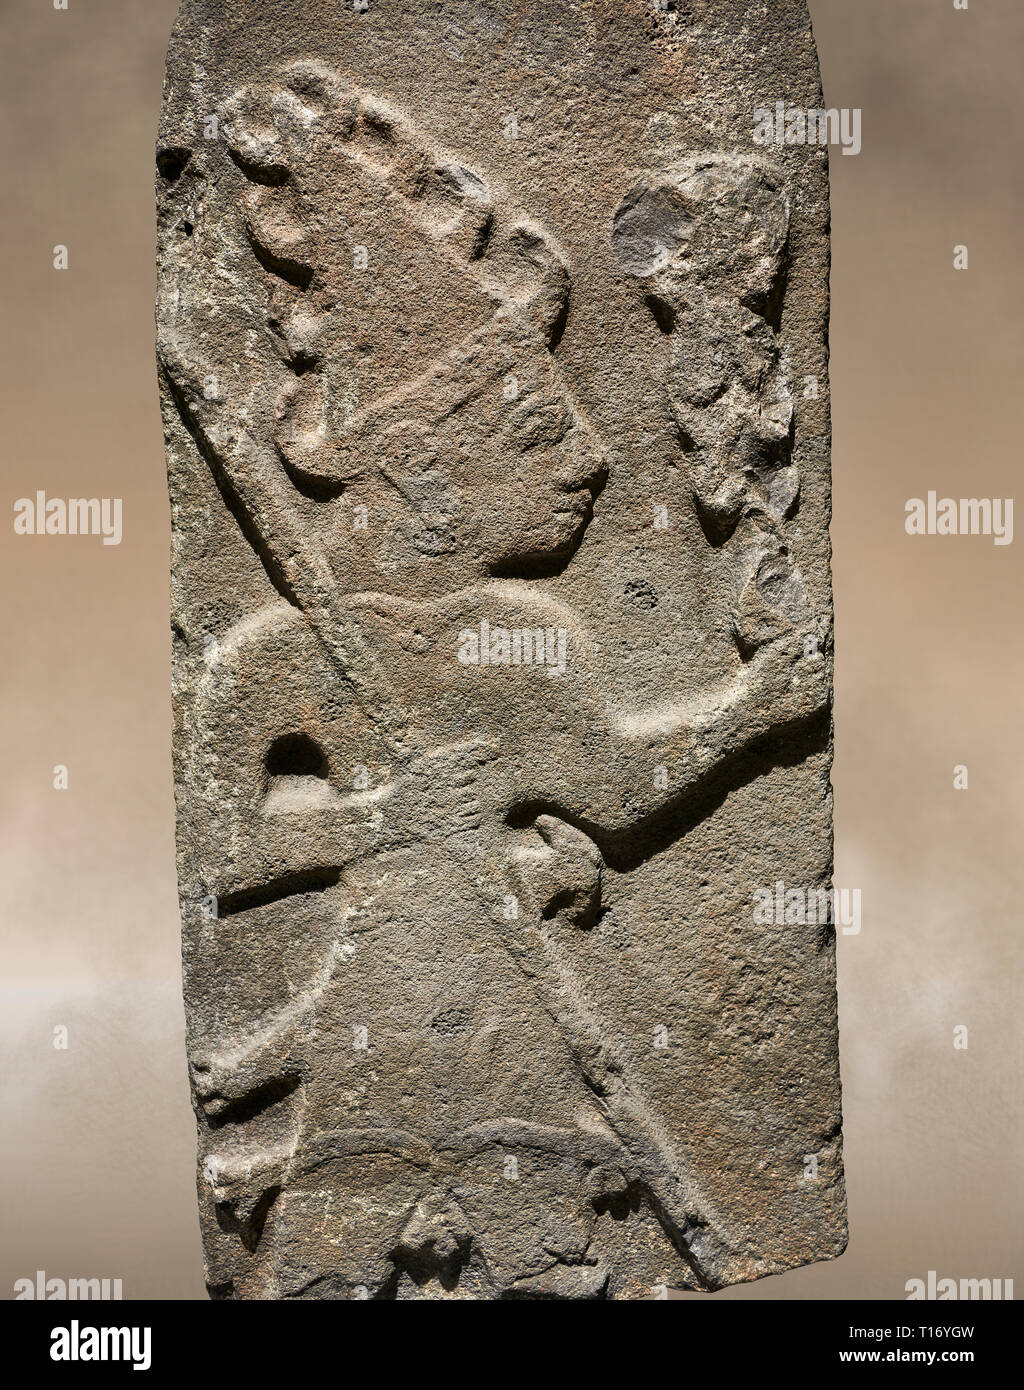 Hittita Rilievo monumentale scultura ofa Dio probabilmente azienda aste parafulmine. Fine periodo Hittita - 900-700 A.C. Adana il Museo di Archeologia, Turchia. Foto Stock